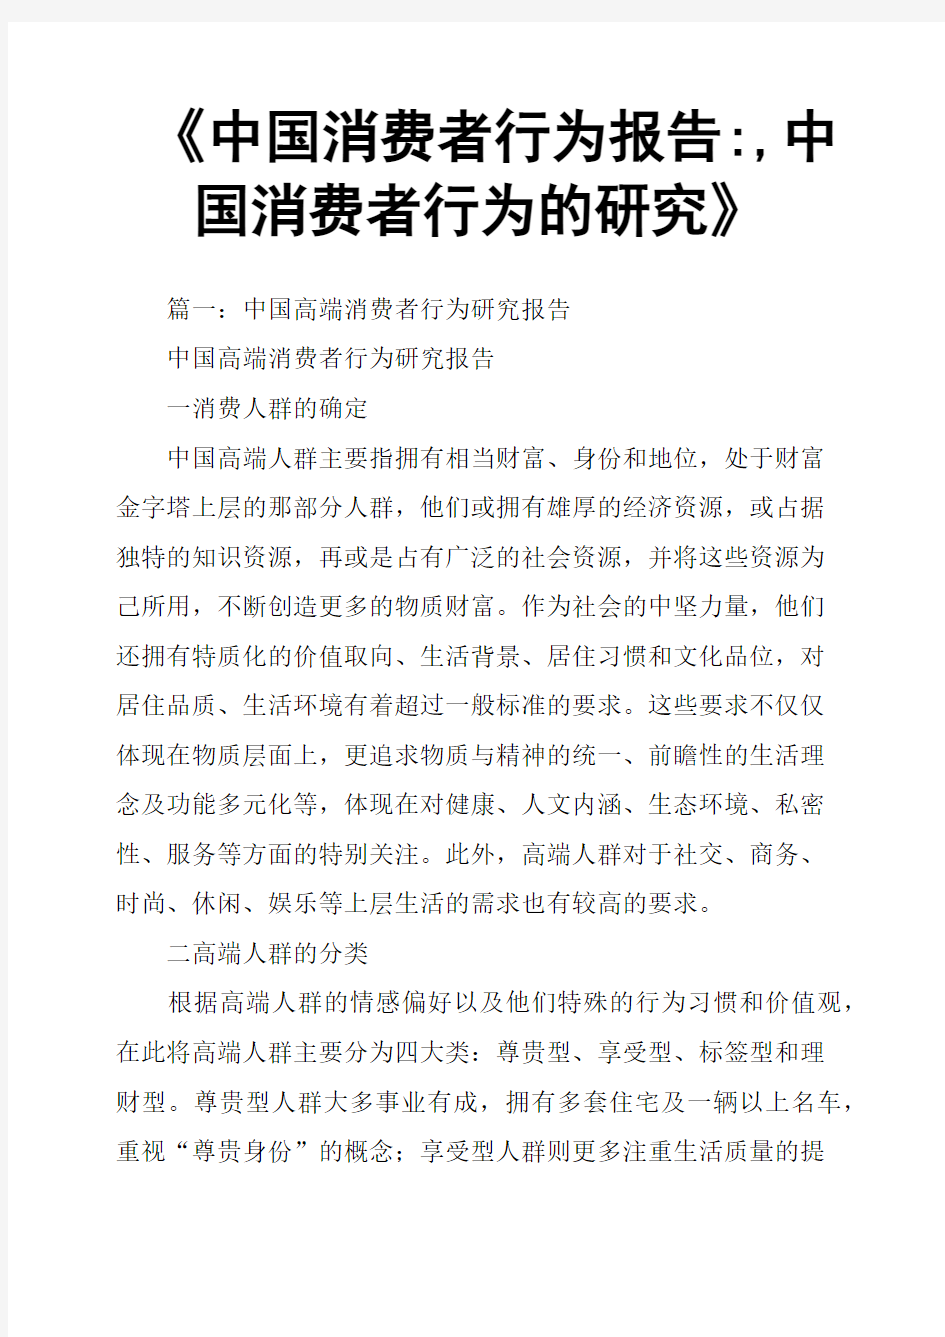 《中国消费者行为报告,中国消费者行为的研究》